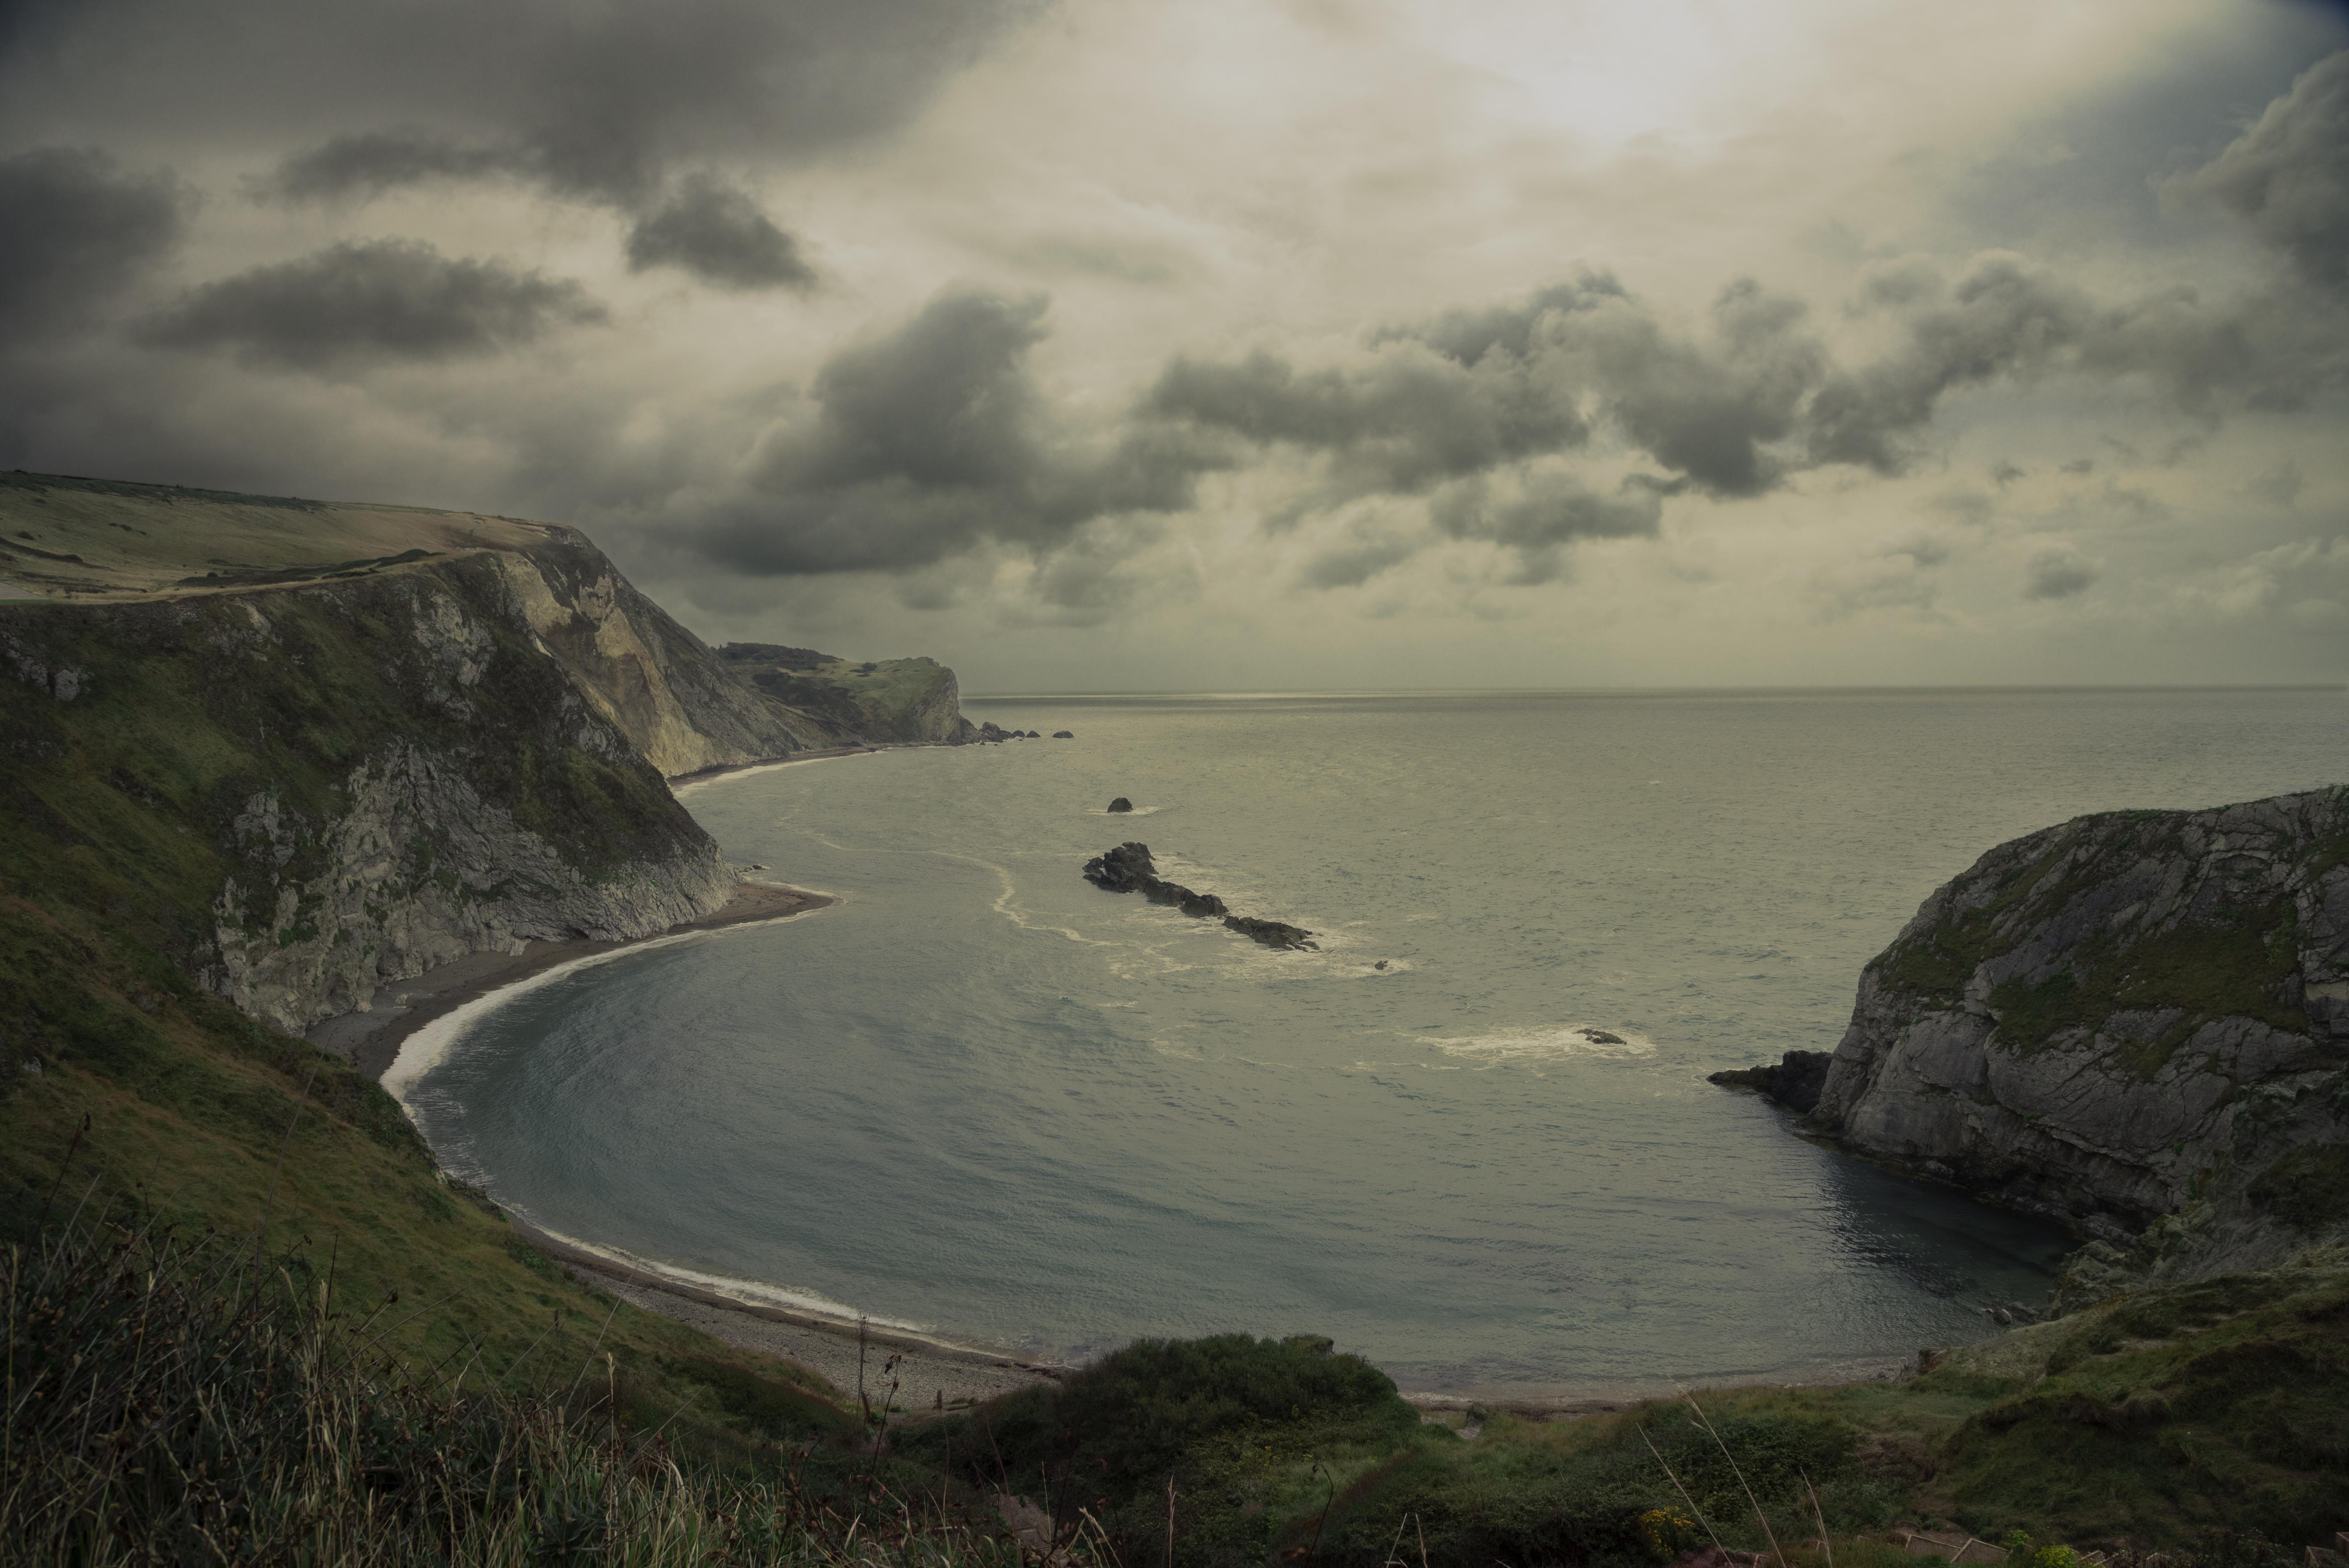 400+ Free Dorset & England Images - Pixabay